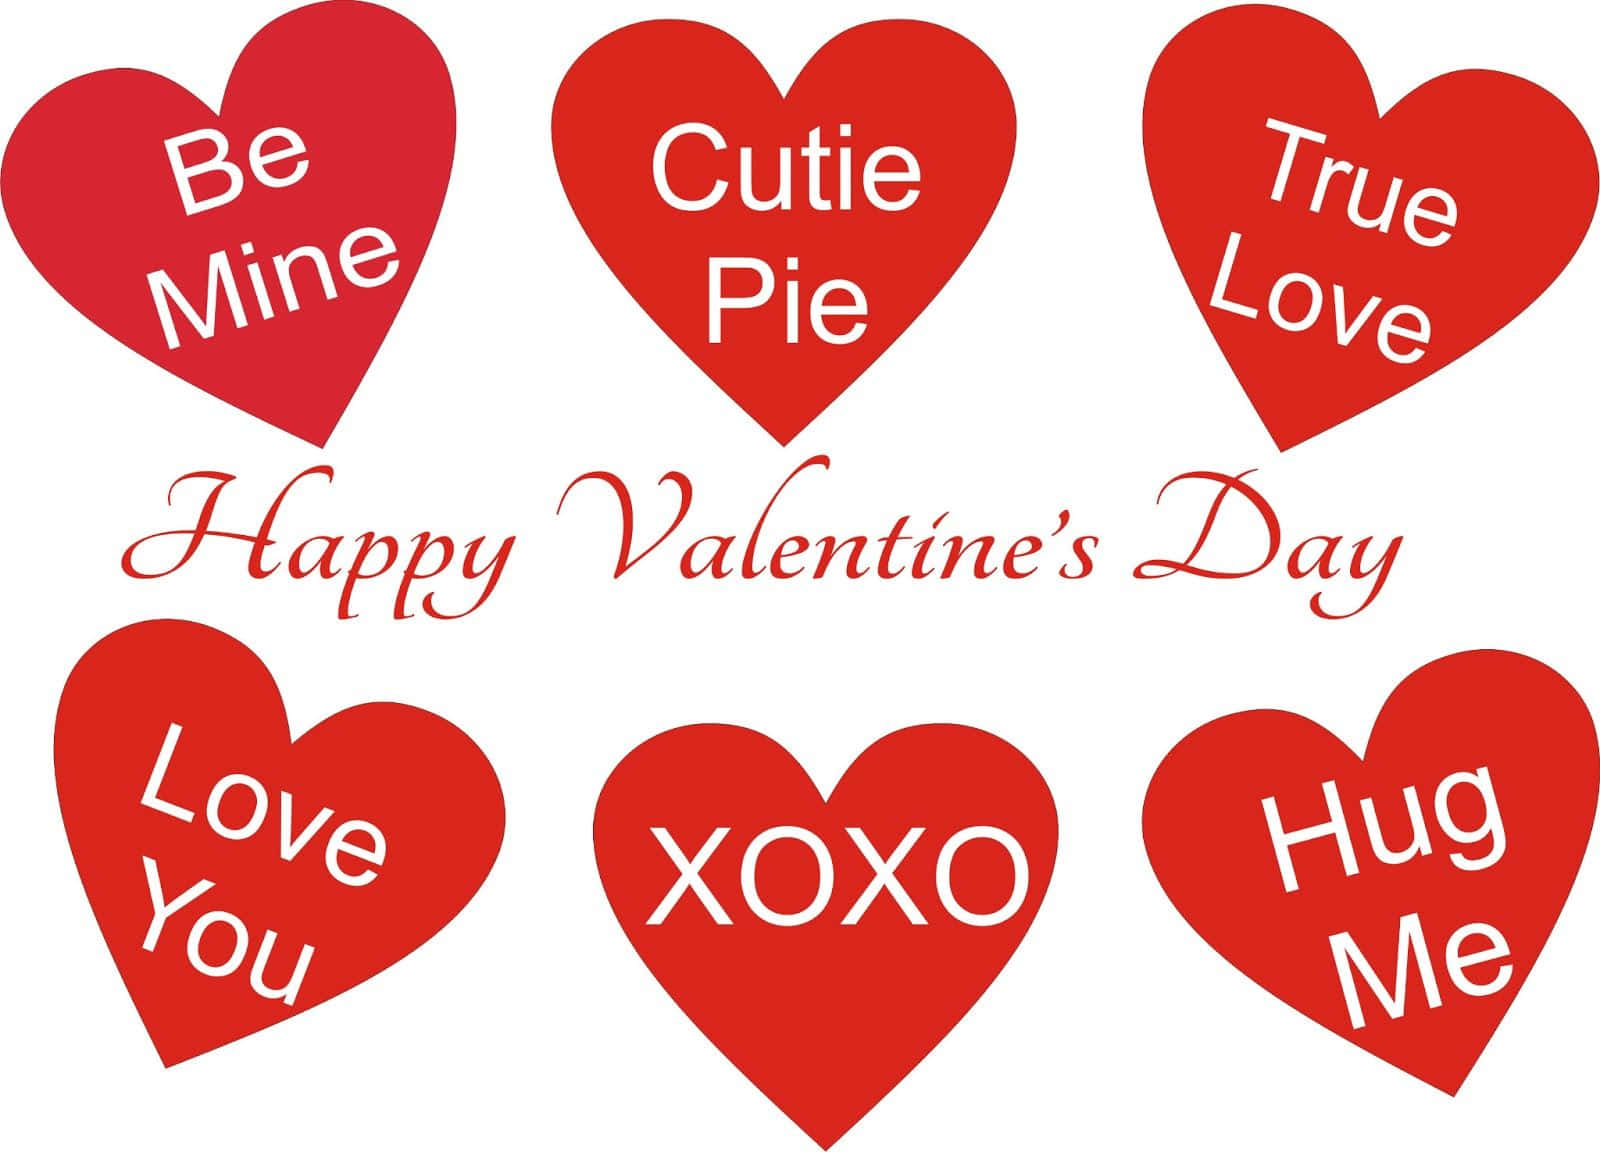 Celebrael Amor Y El Cariño En Este Día De San Valentín.